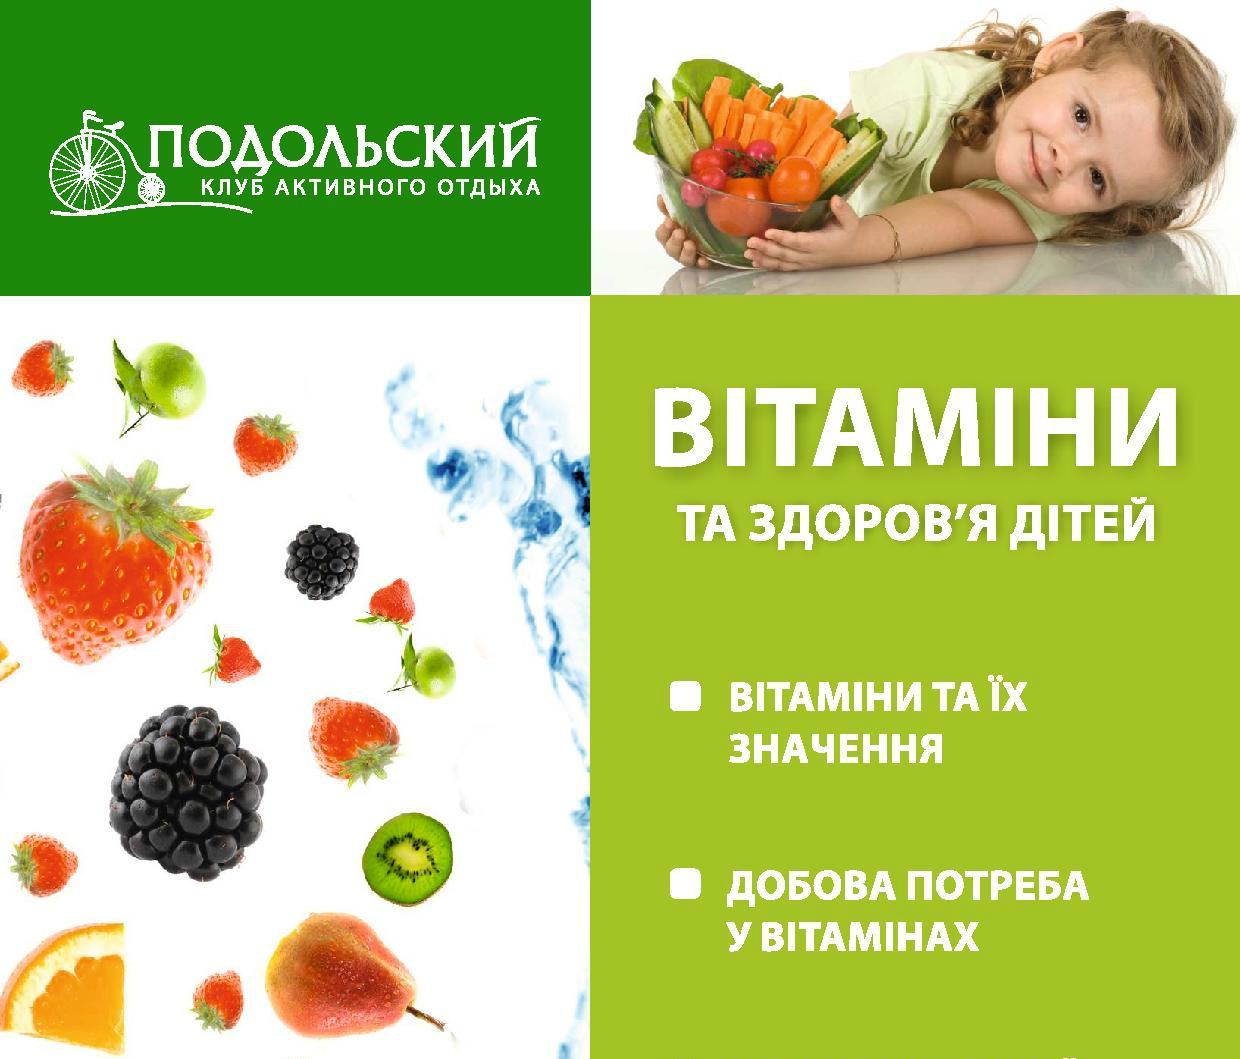 Вітаміни та здоров'я дітей